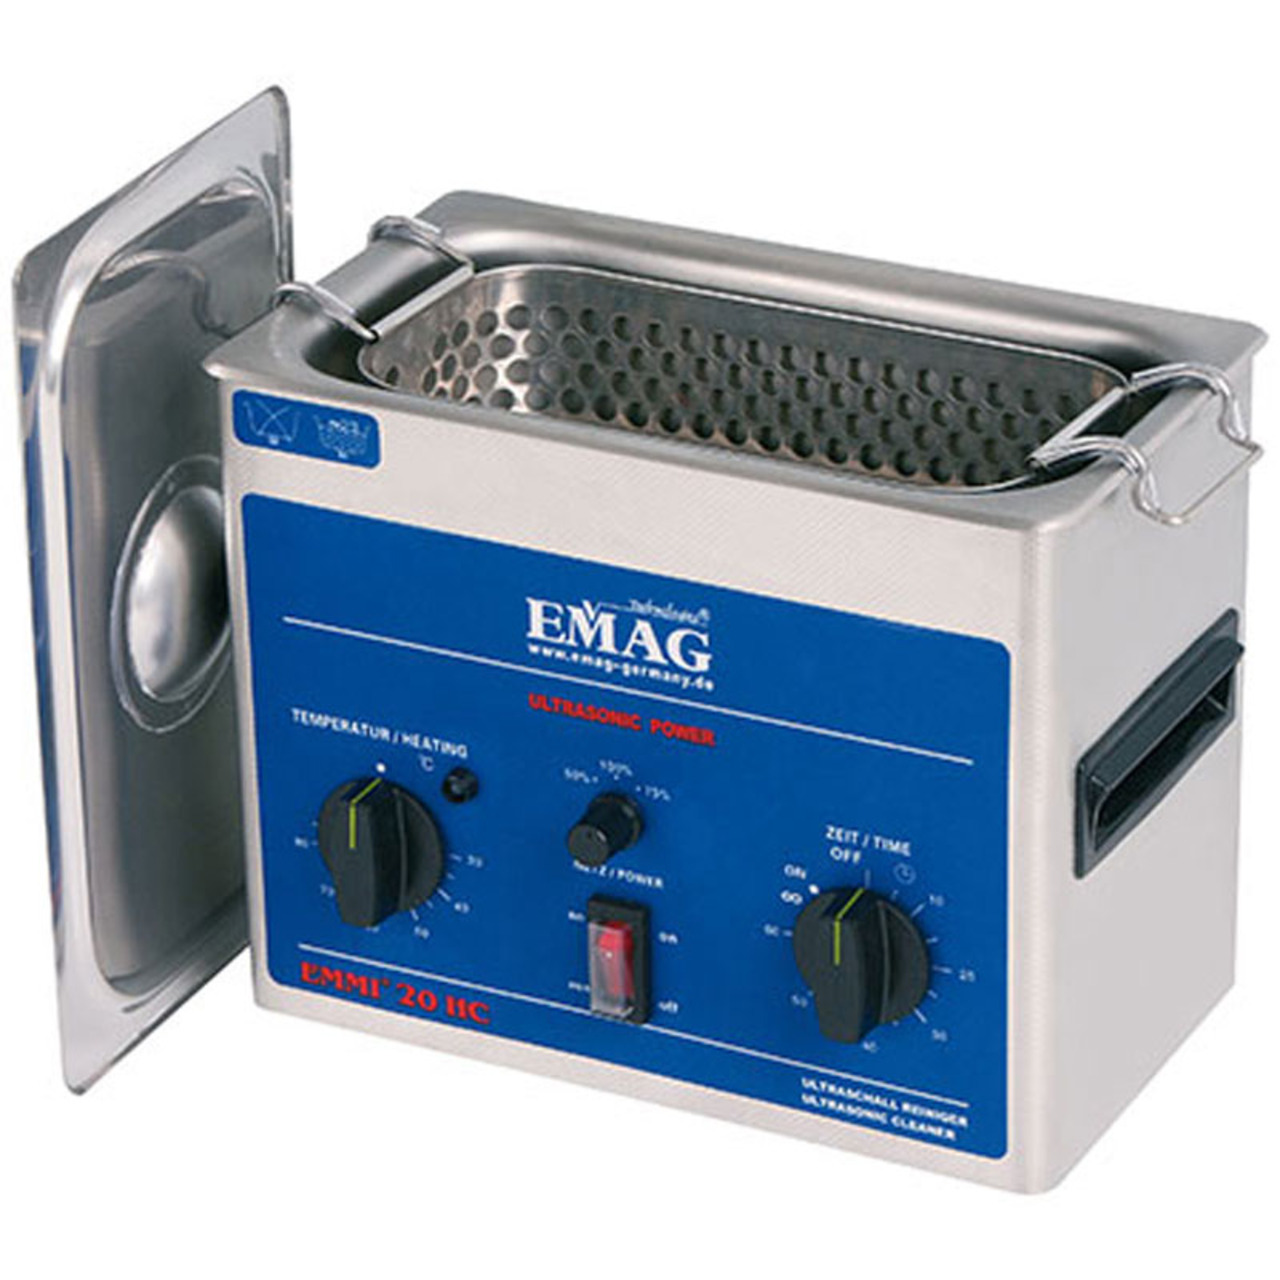 EMAG UltraschallreinigerEmmi-20 HC- 2-0 L- mit Universalreiniger EM-080 unter Werkstatt 